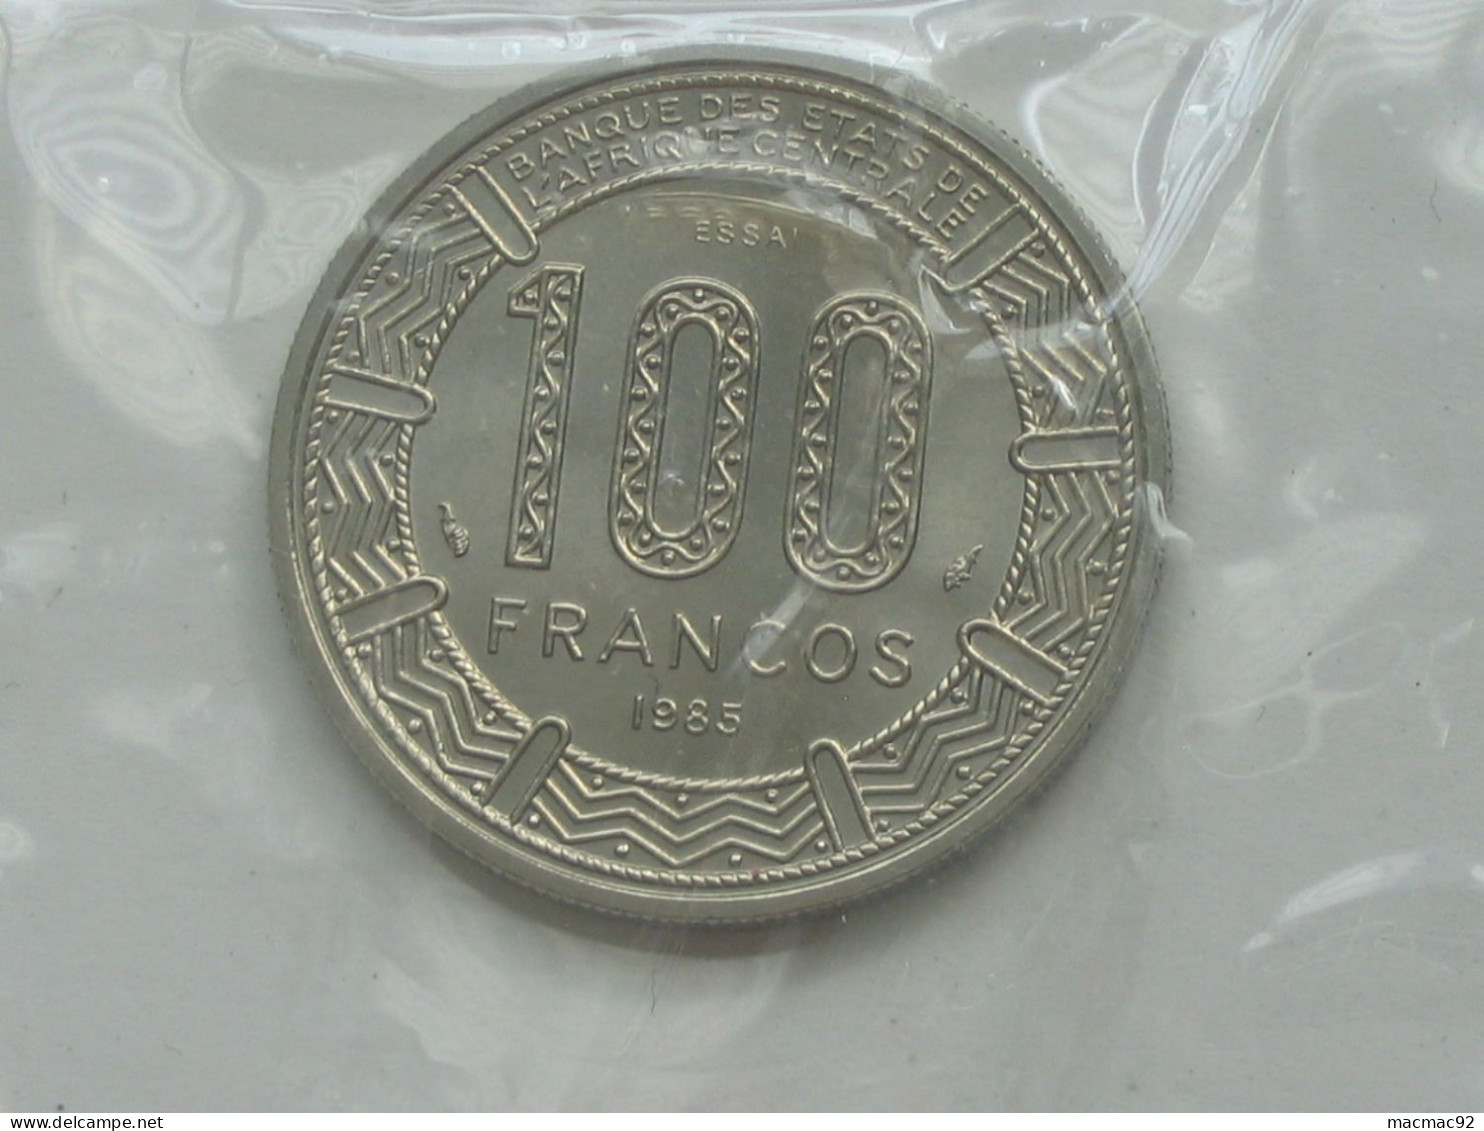 GUINEE EQUATORIALE - Rare ESSAI De 100 Francs 1985 - Banque Des états De L'Afrique Centrale  **** EN ACHAT IMMEDIAT **** - Aequatorial-Guinea